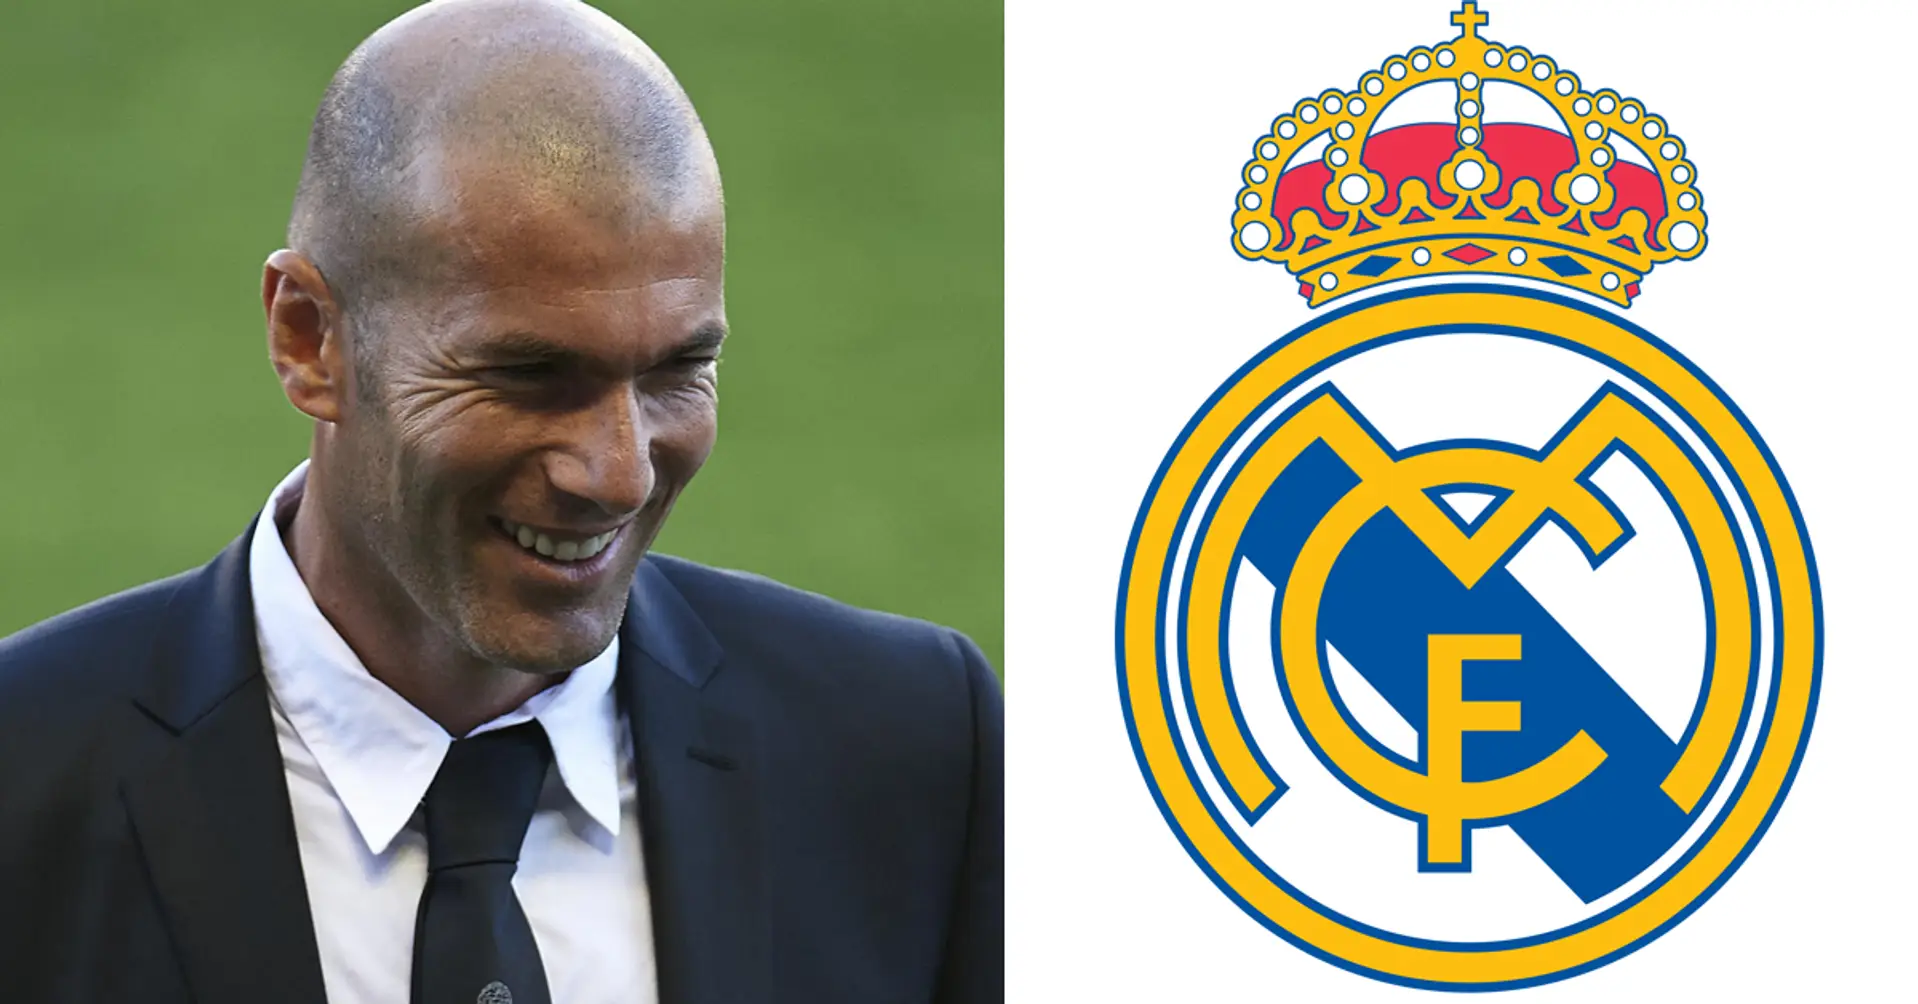 Der Kauf von einem Spieler ist die Bedingung für Zidanes Rückkehr zu Real Madrid - es geht nicht um Mbappe